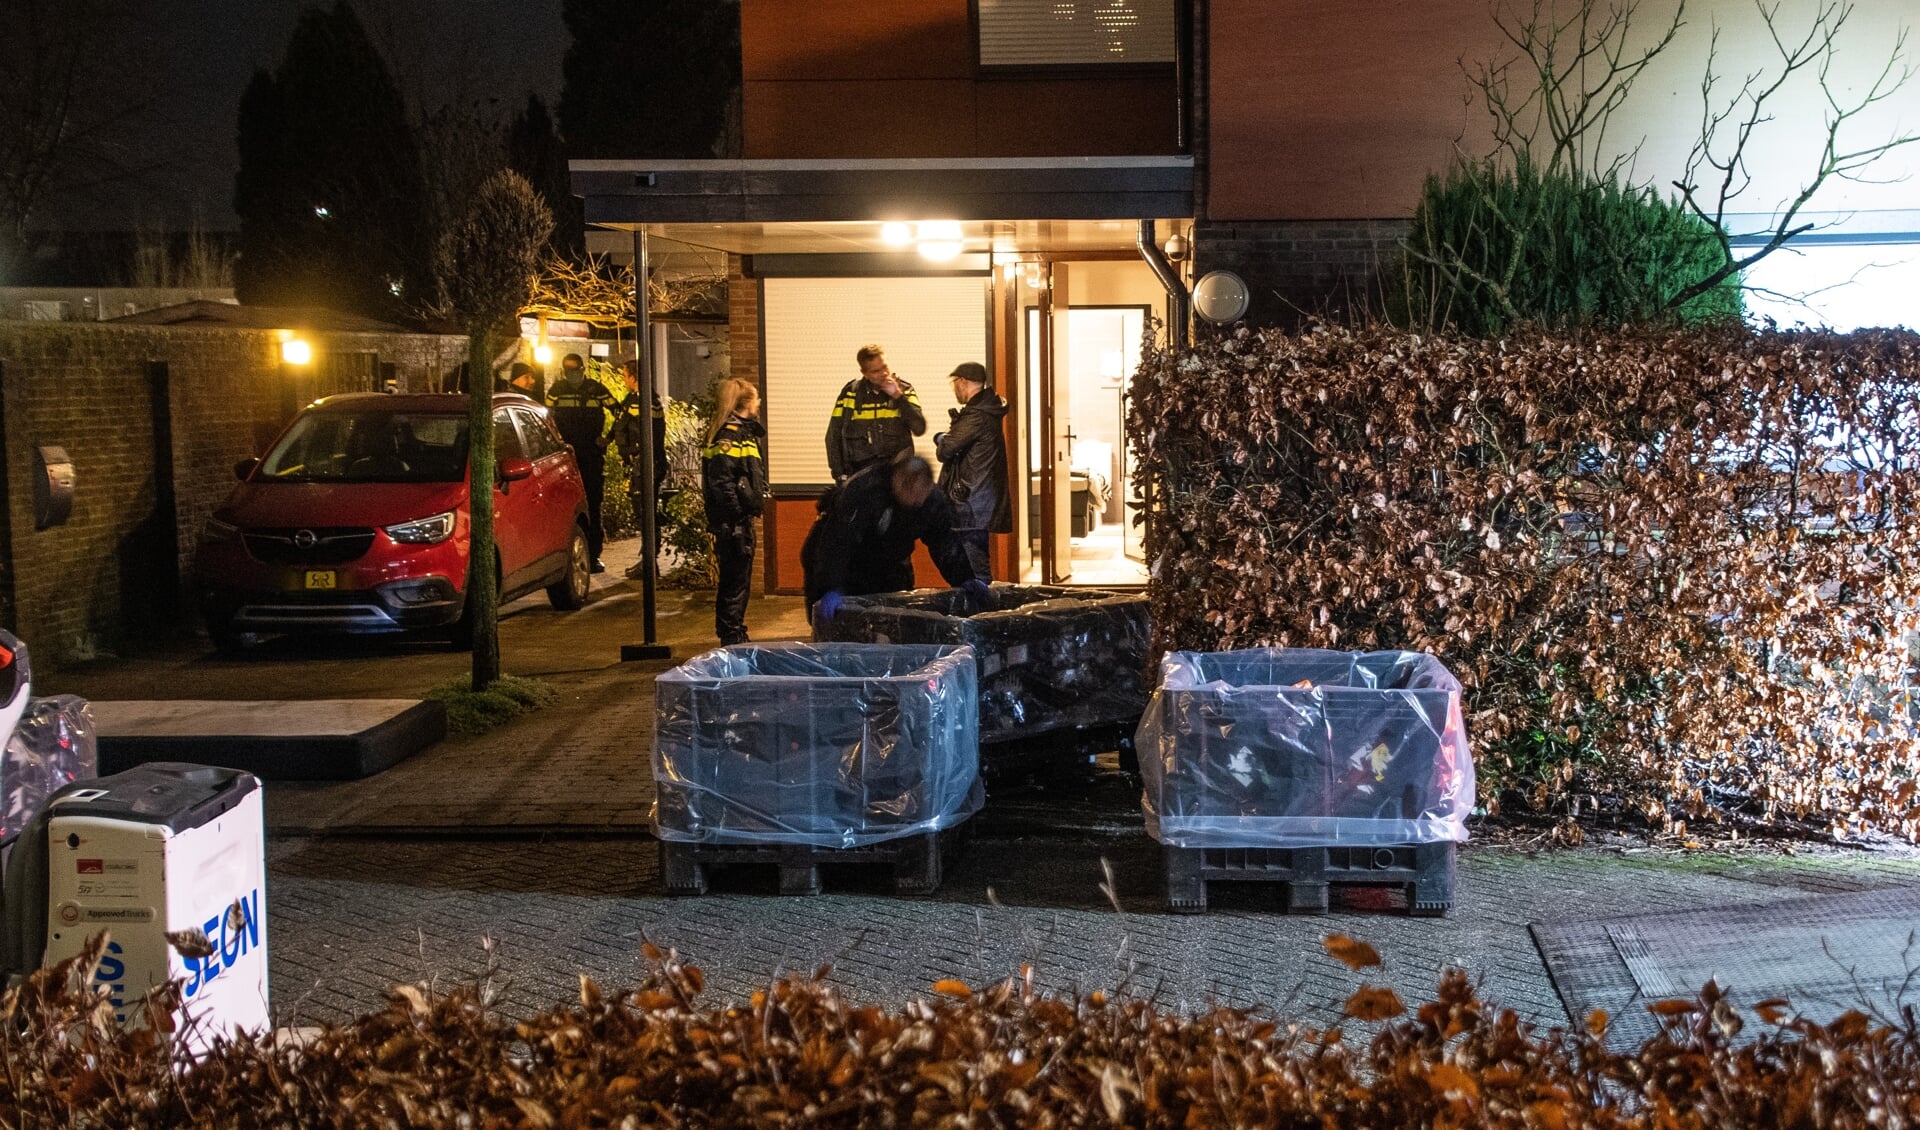 • Op 15 februari trof de politie een drugslab aan in een woning aan de Hendrik Ibsenweg in Woerden. 